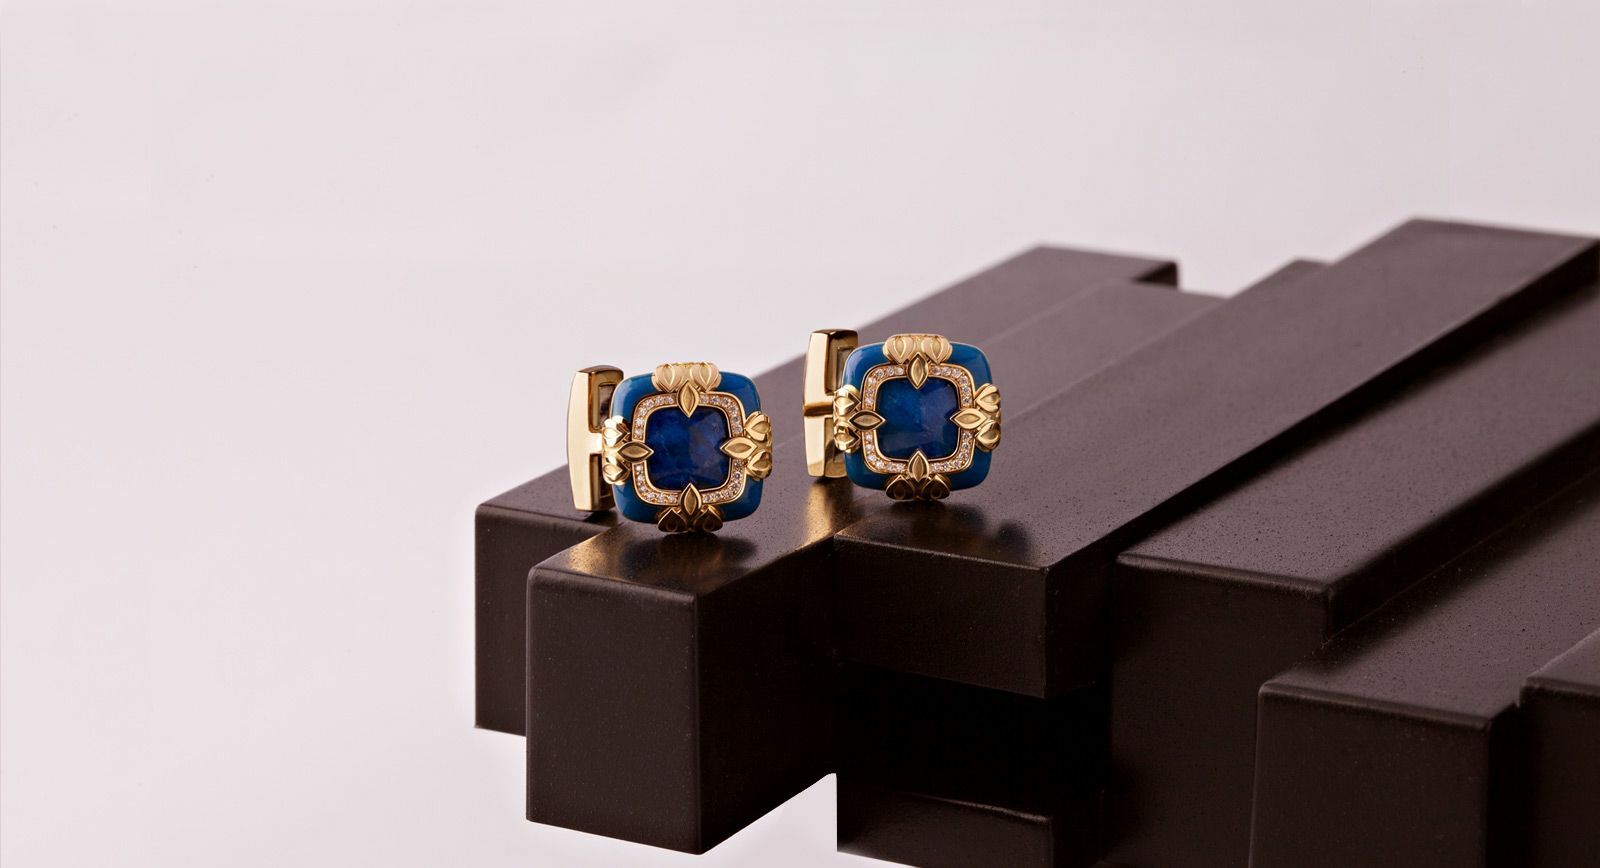 Ichien cufflinks in lapis lazuli with yellow gold